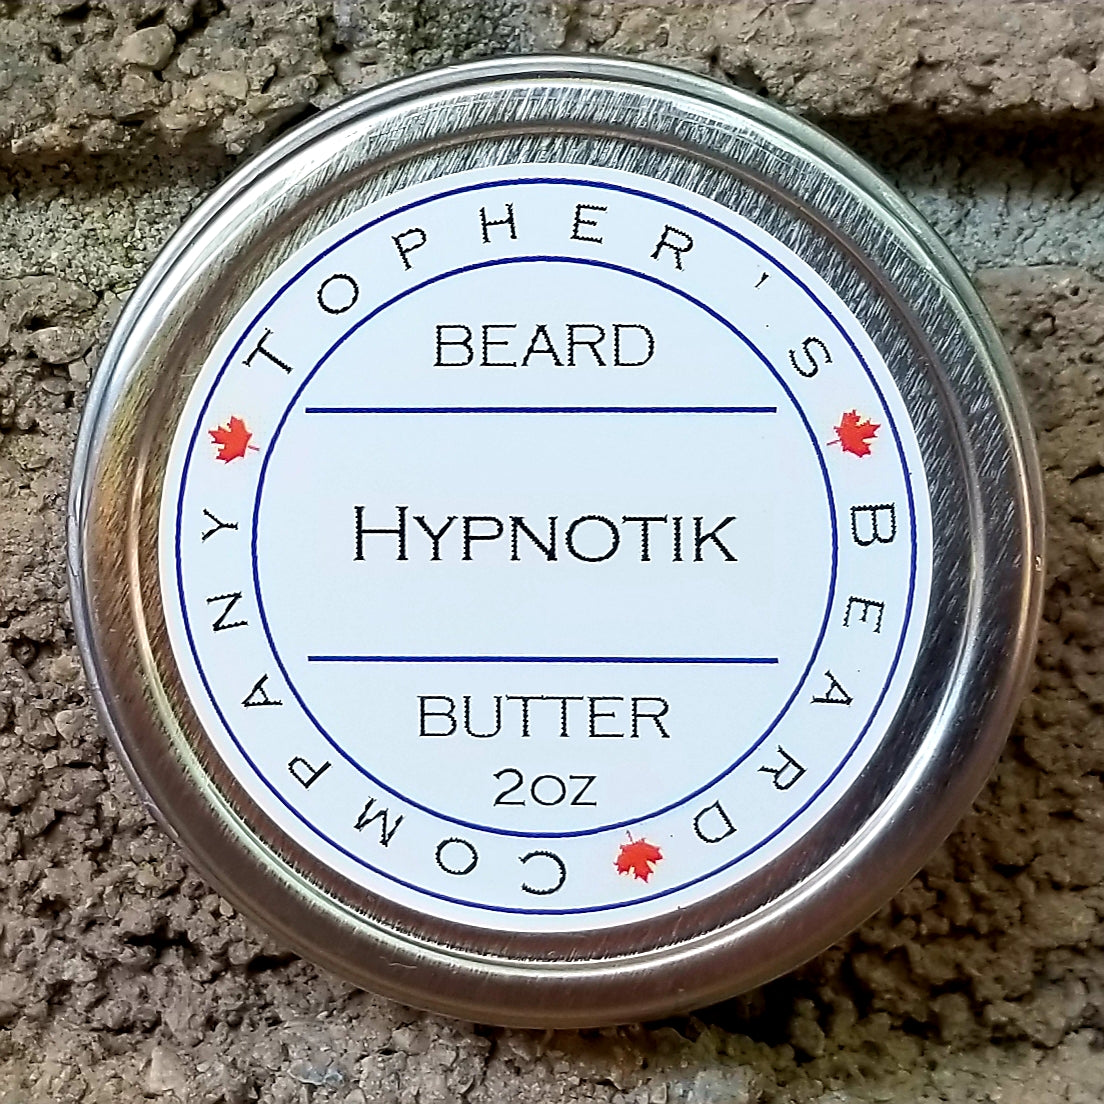 Hypnotik Premium Beard Butter